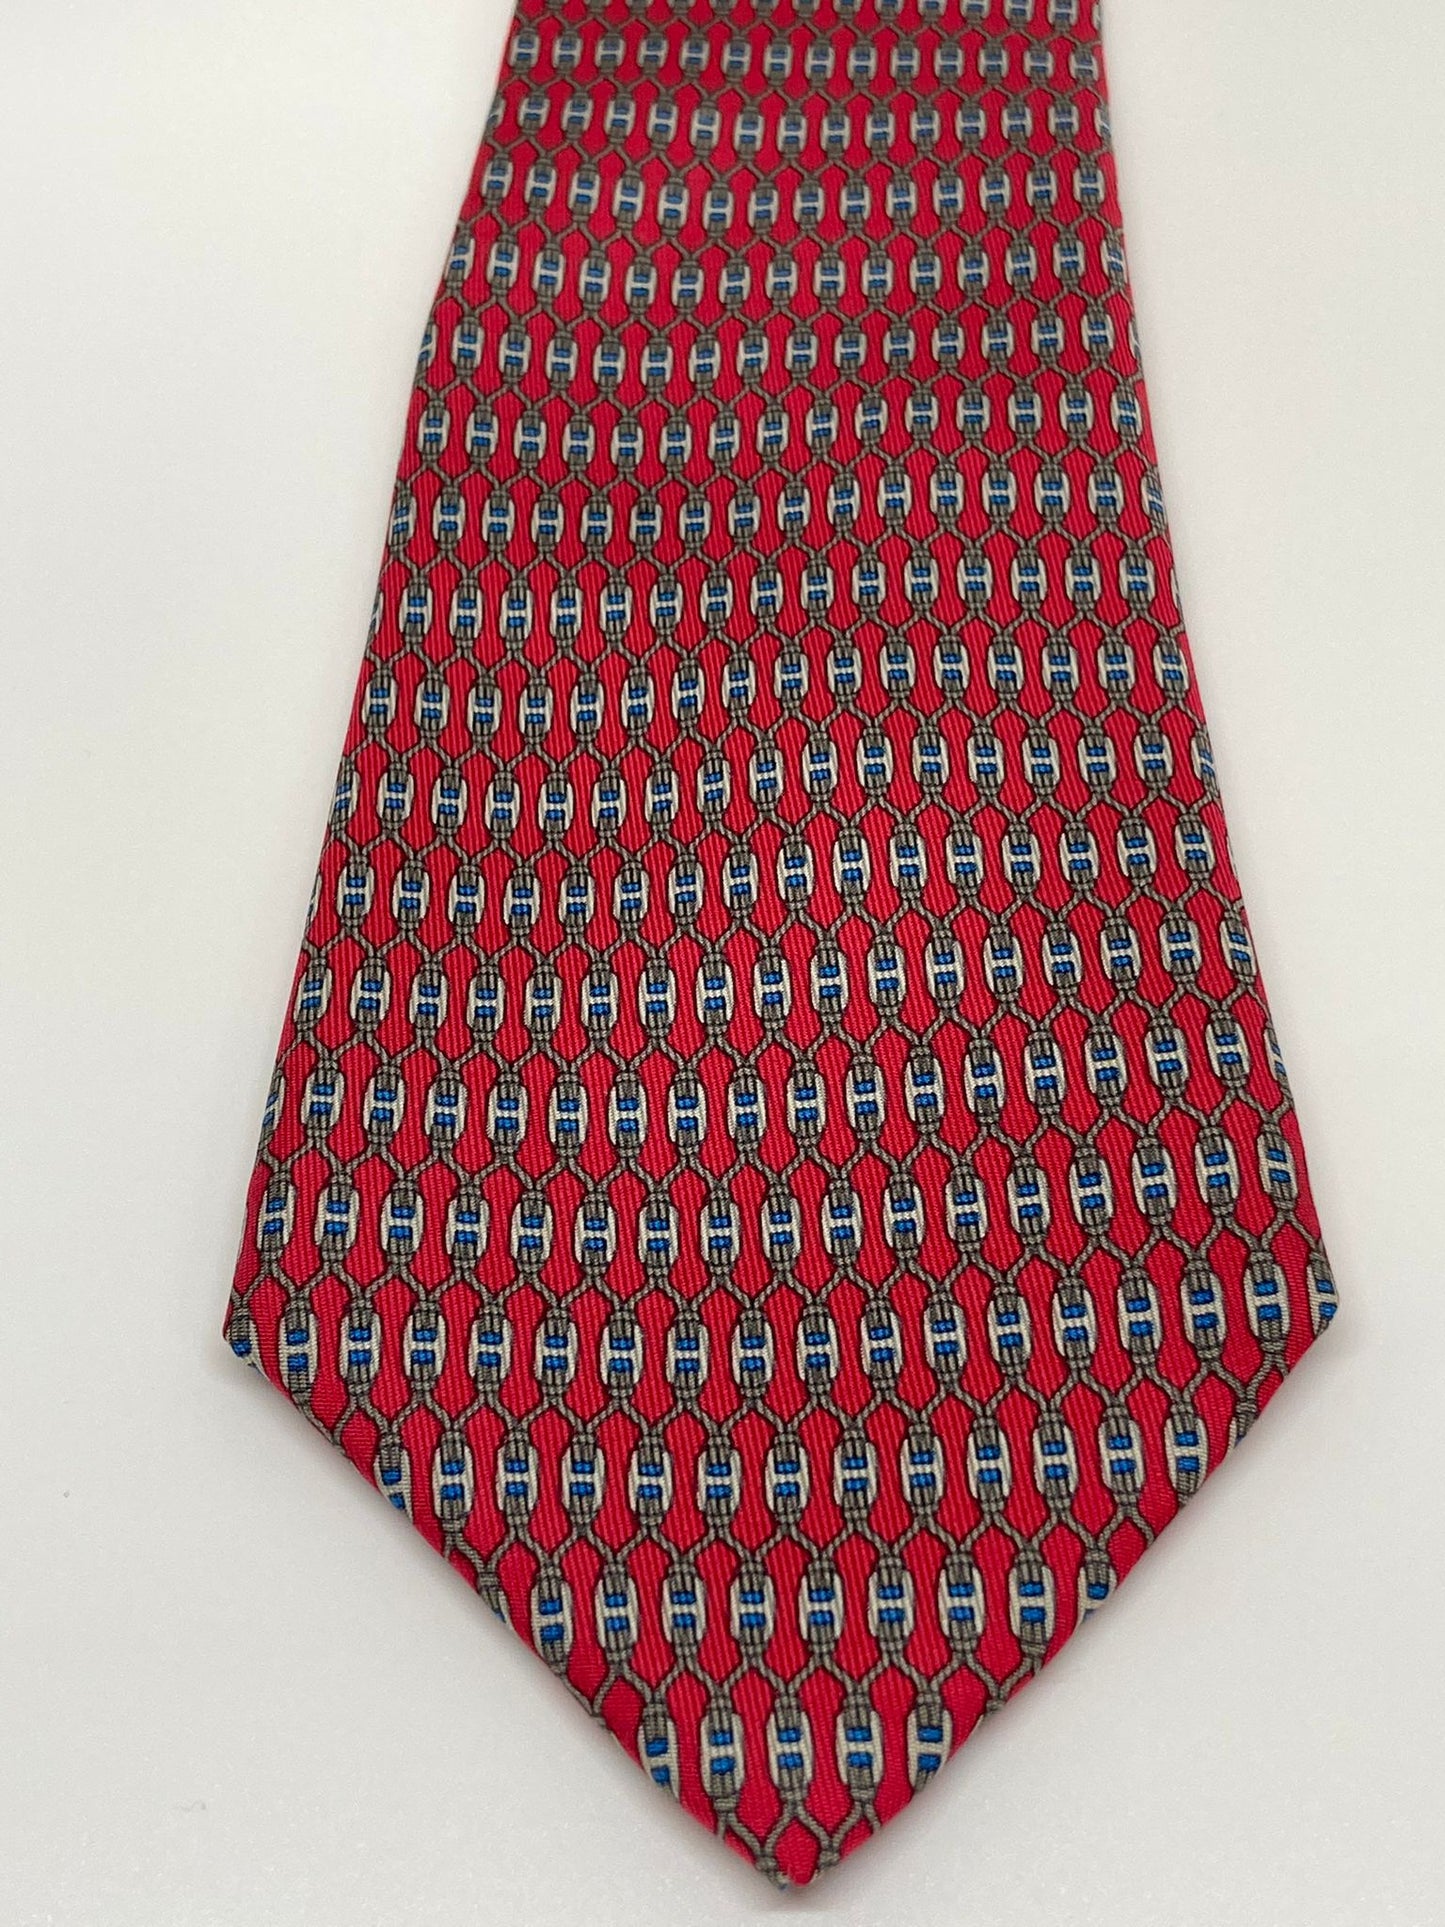 Cravatta Hermès stampa con fibbie legate c.7199UA